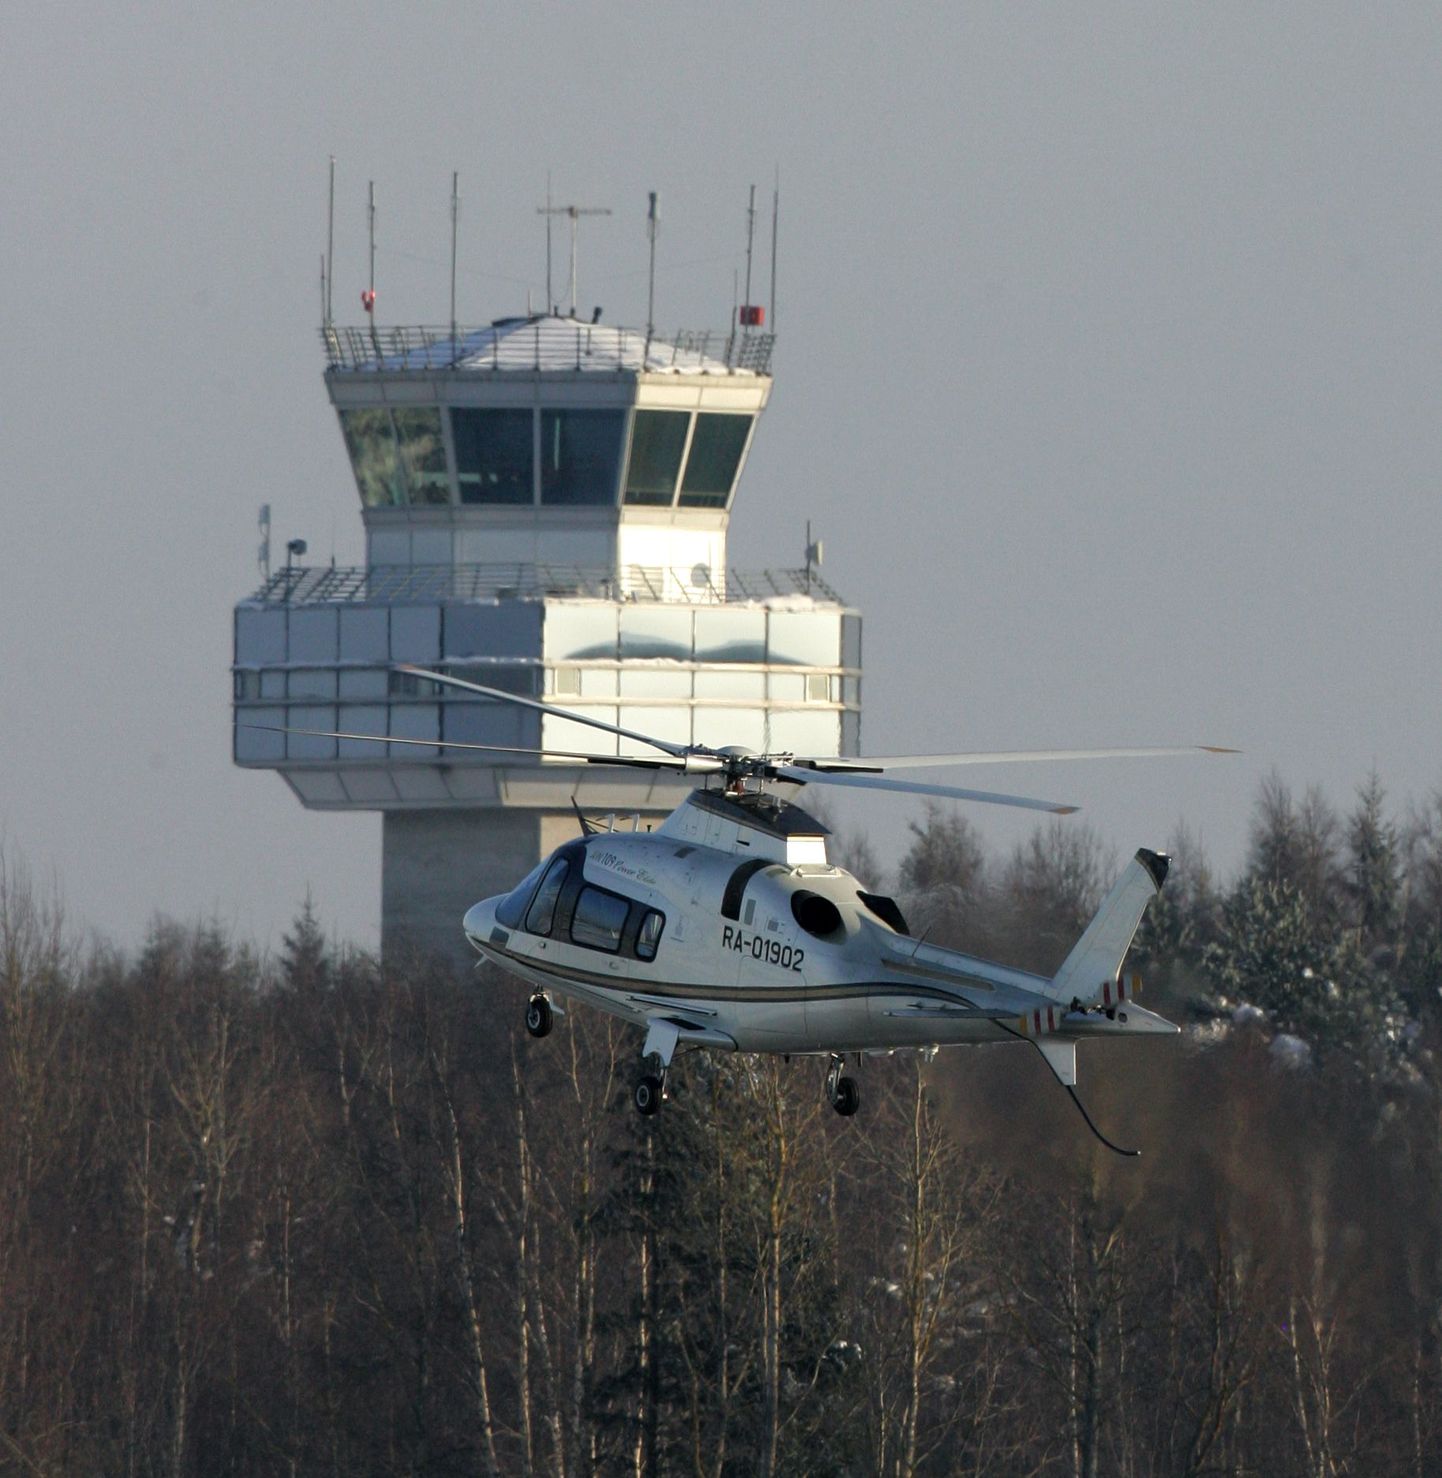 Lennujuhtimiskeskus Tallinna lennujaamas.